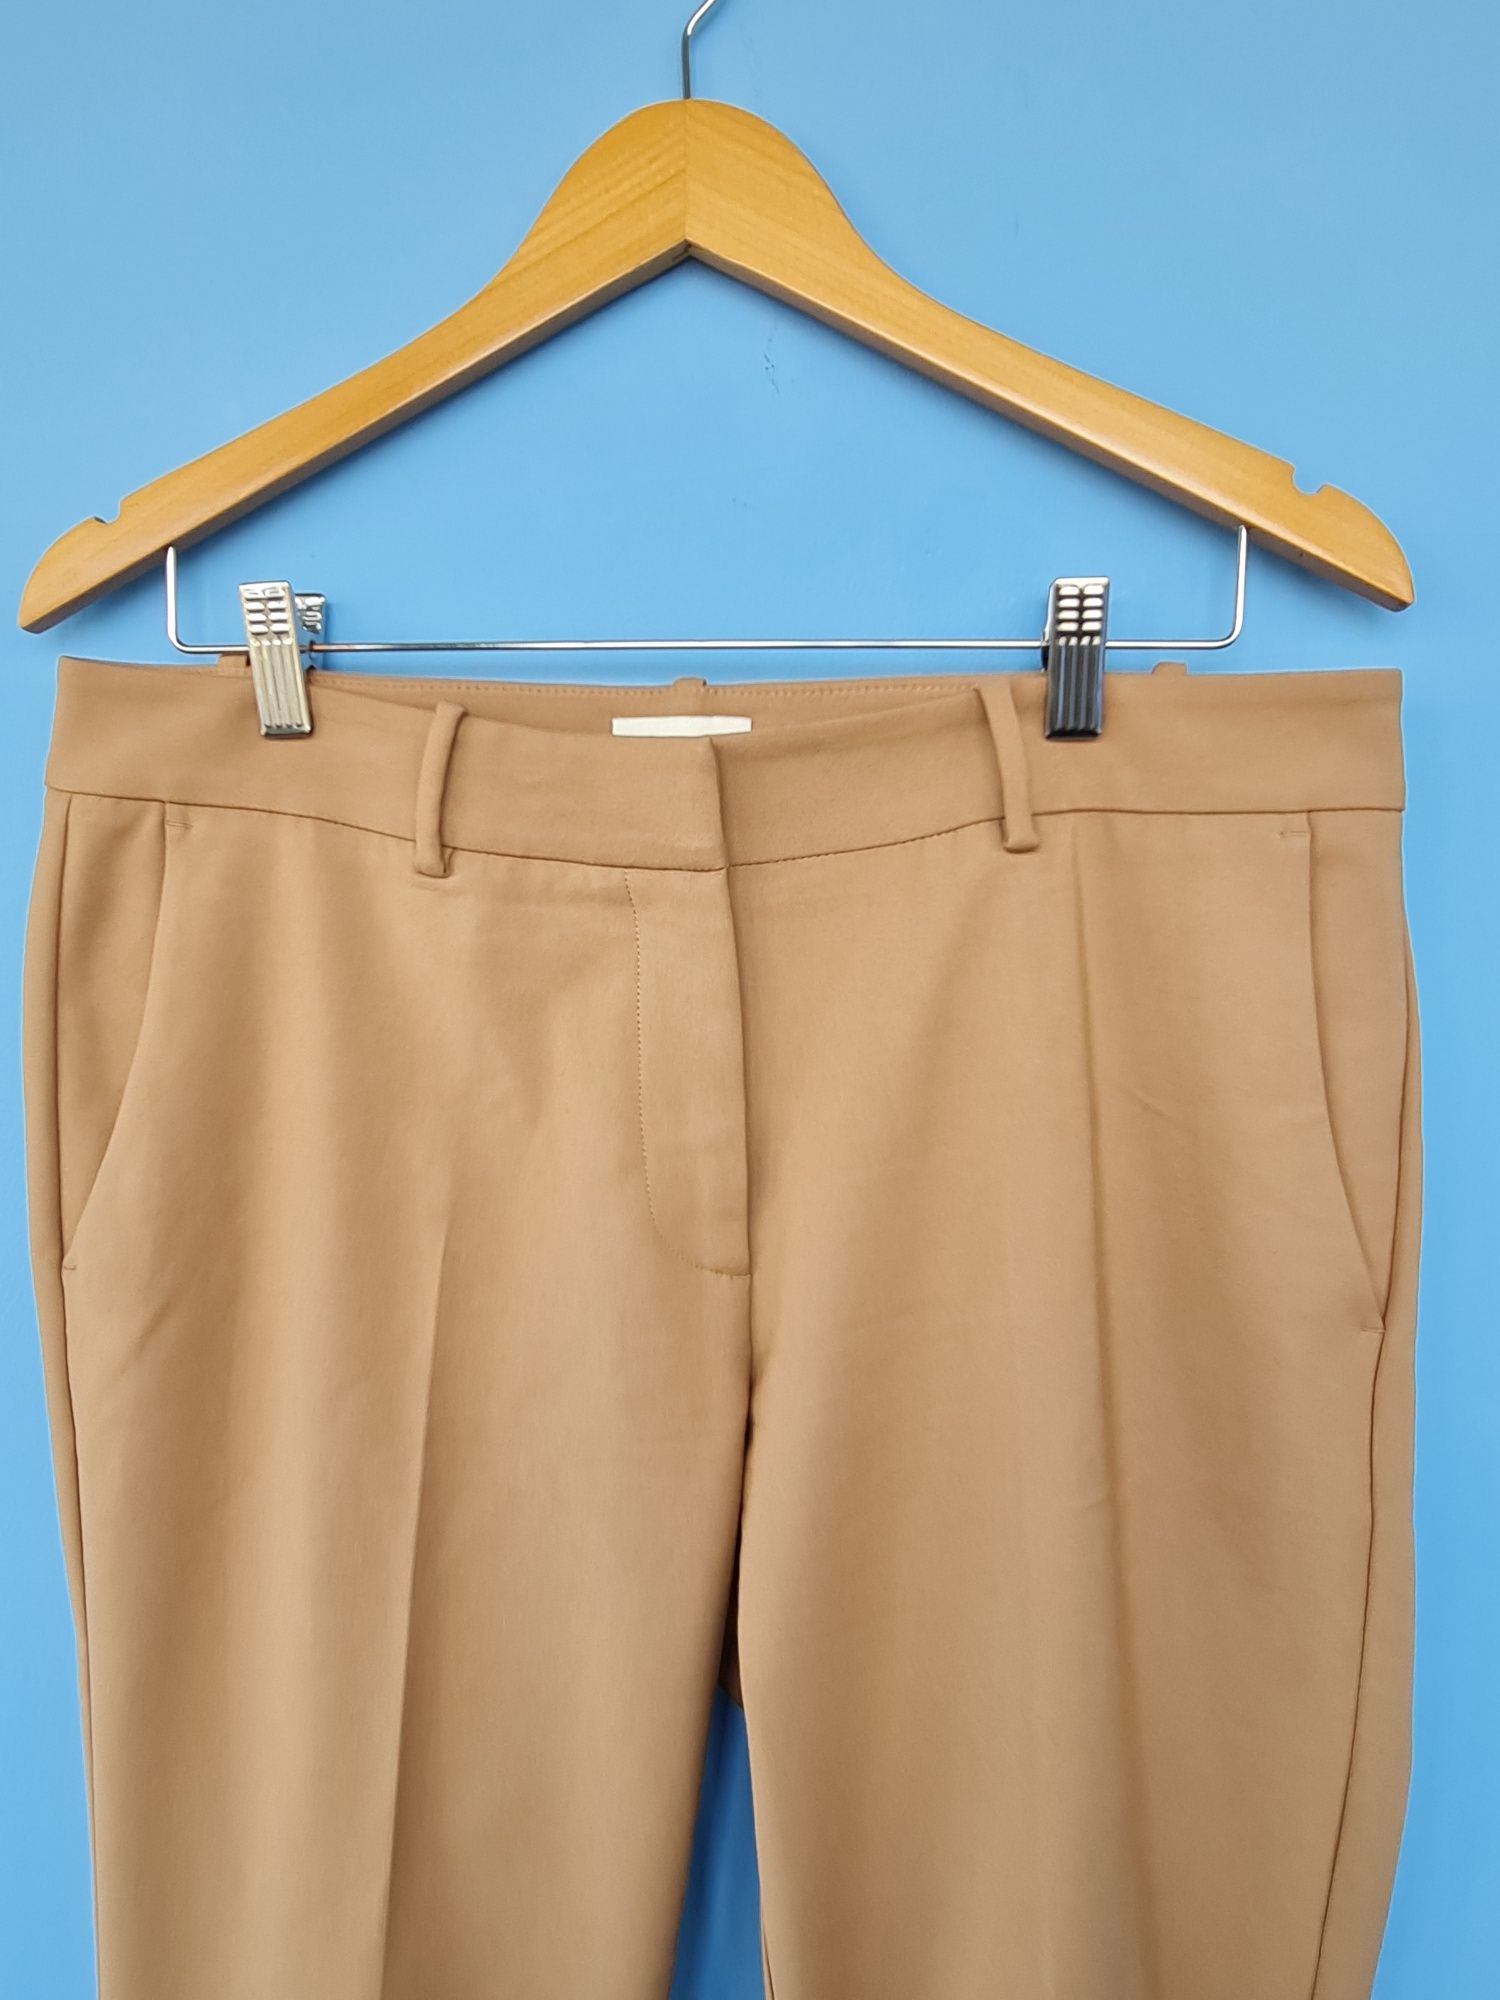 XL Панталони - нови и използвани, в отлично състояние